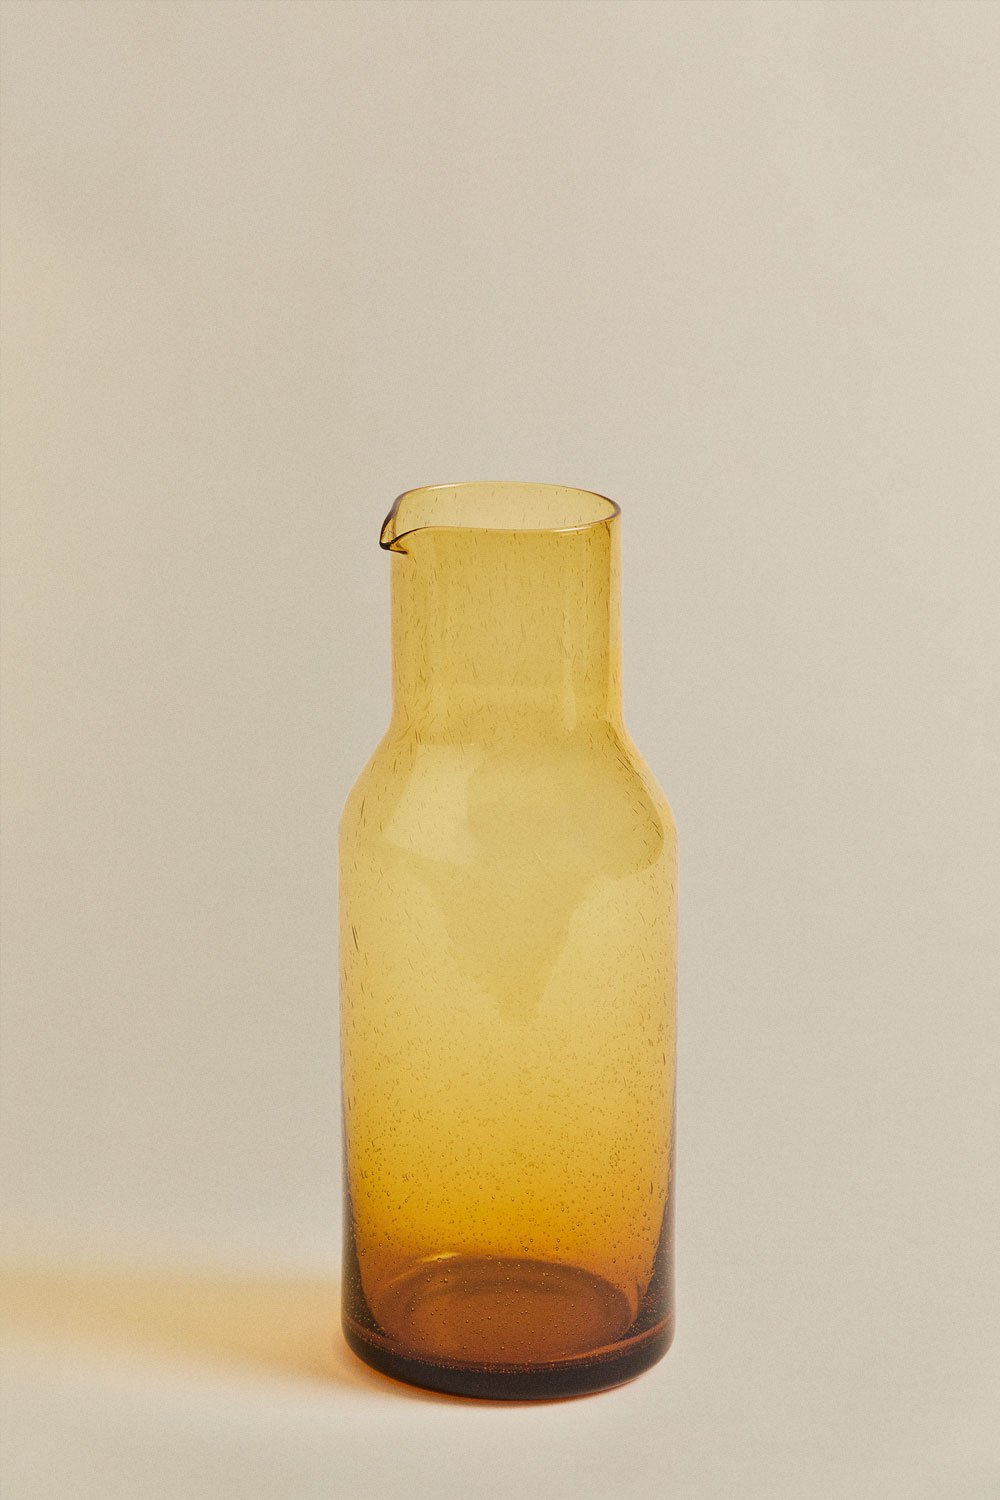 Gulix glazen kan van 1,5 liter, galerij beeld 2